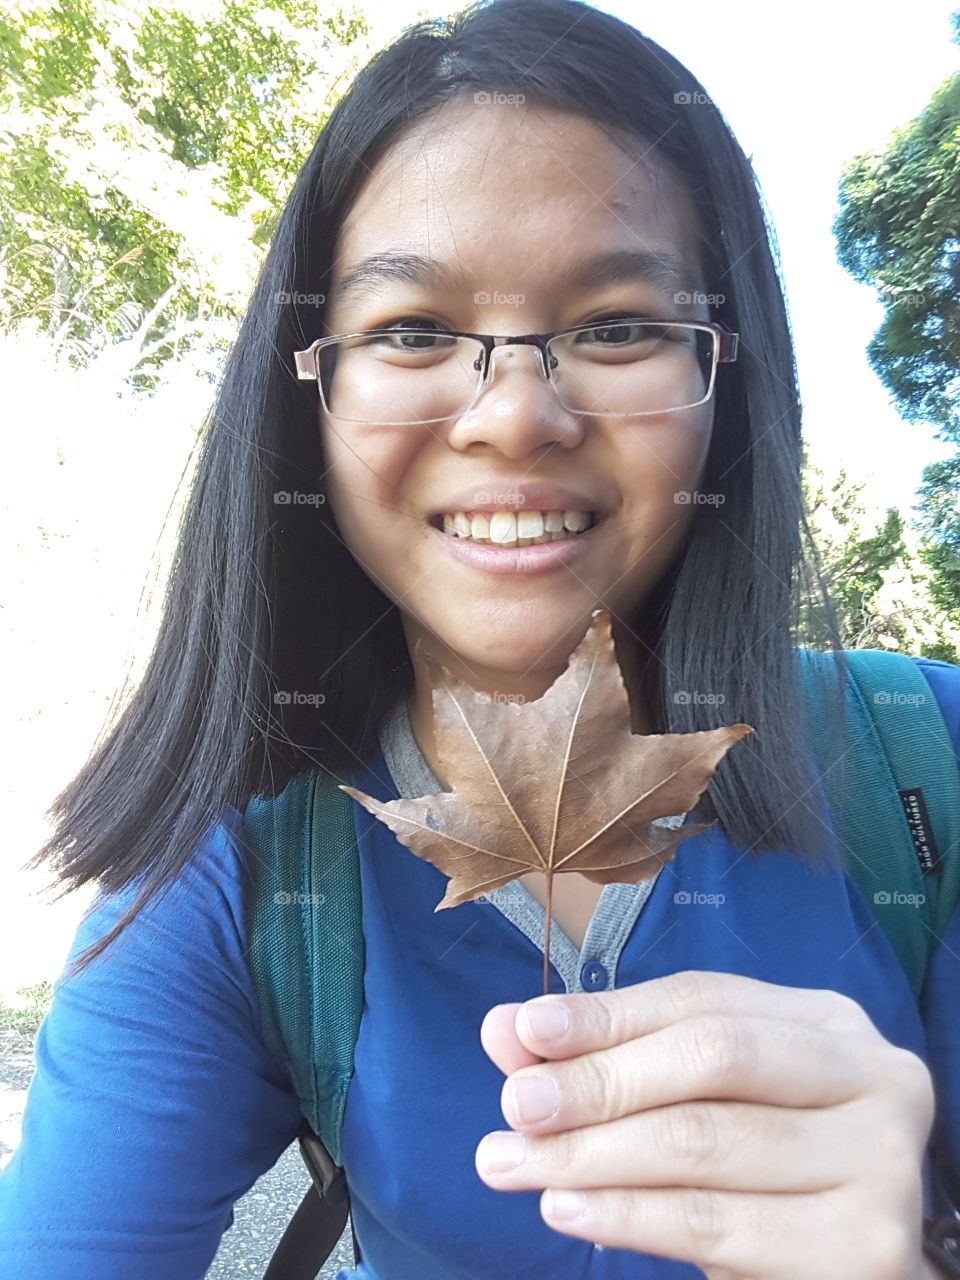 dried leaf